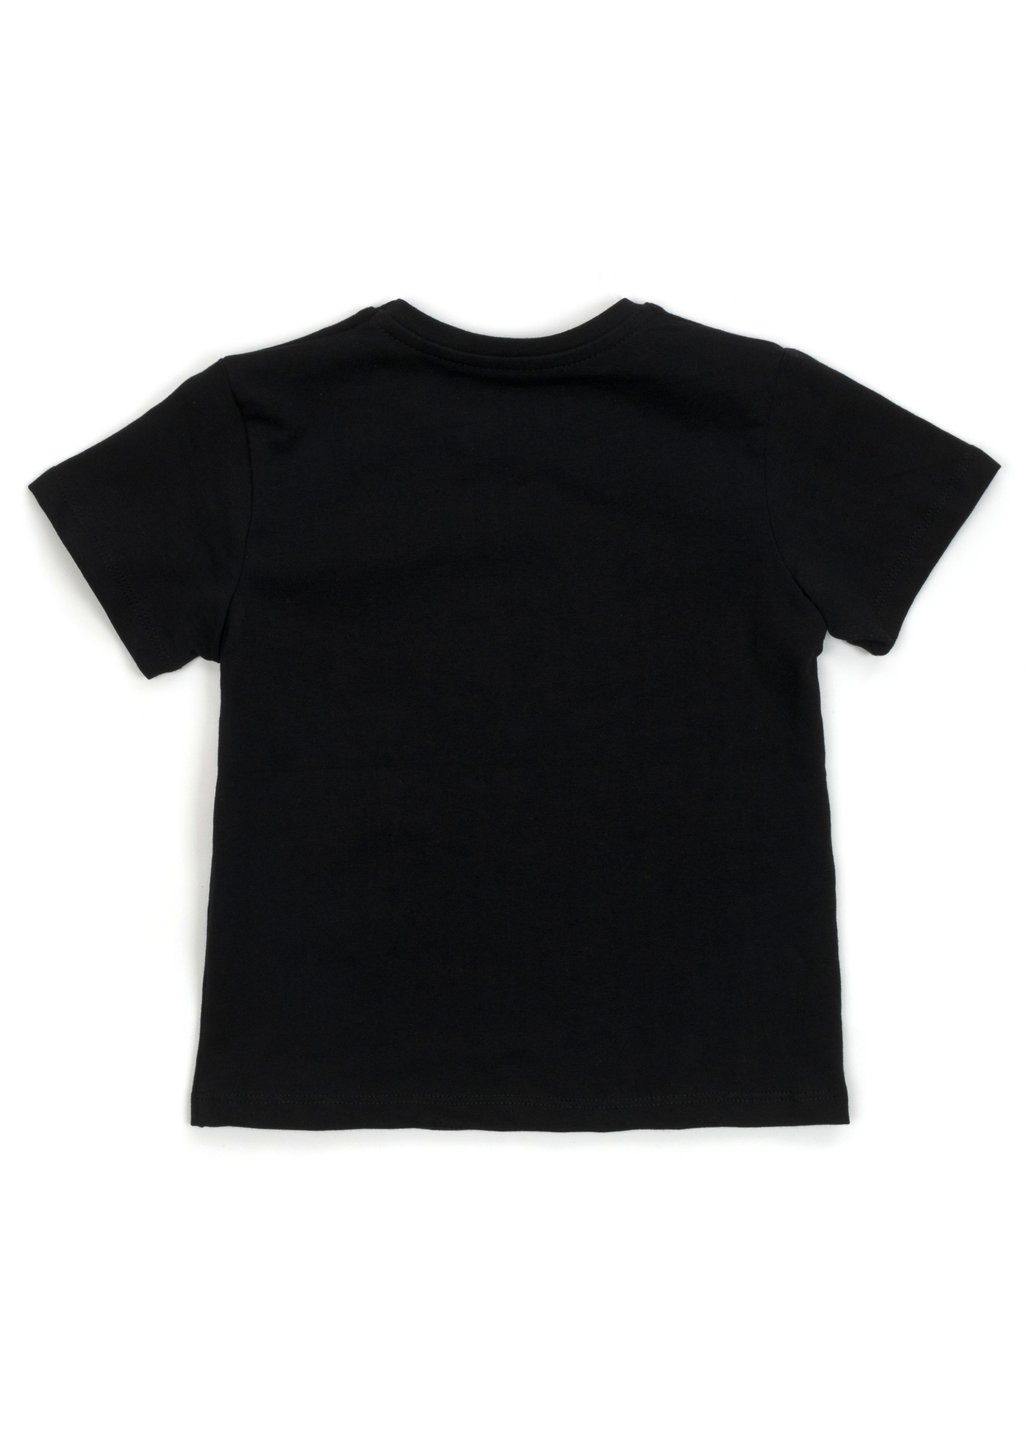 Черный летний набор детской одежды футболка с бриджами (m-120-116b-black) H.A